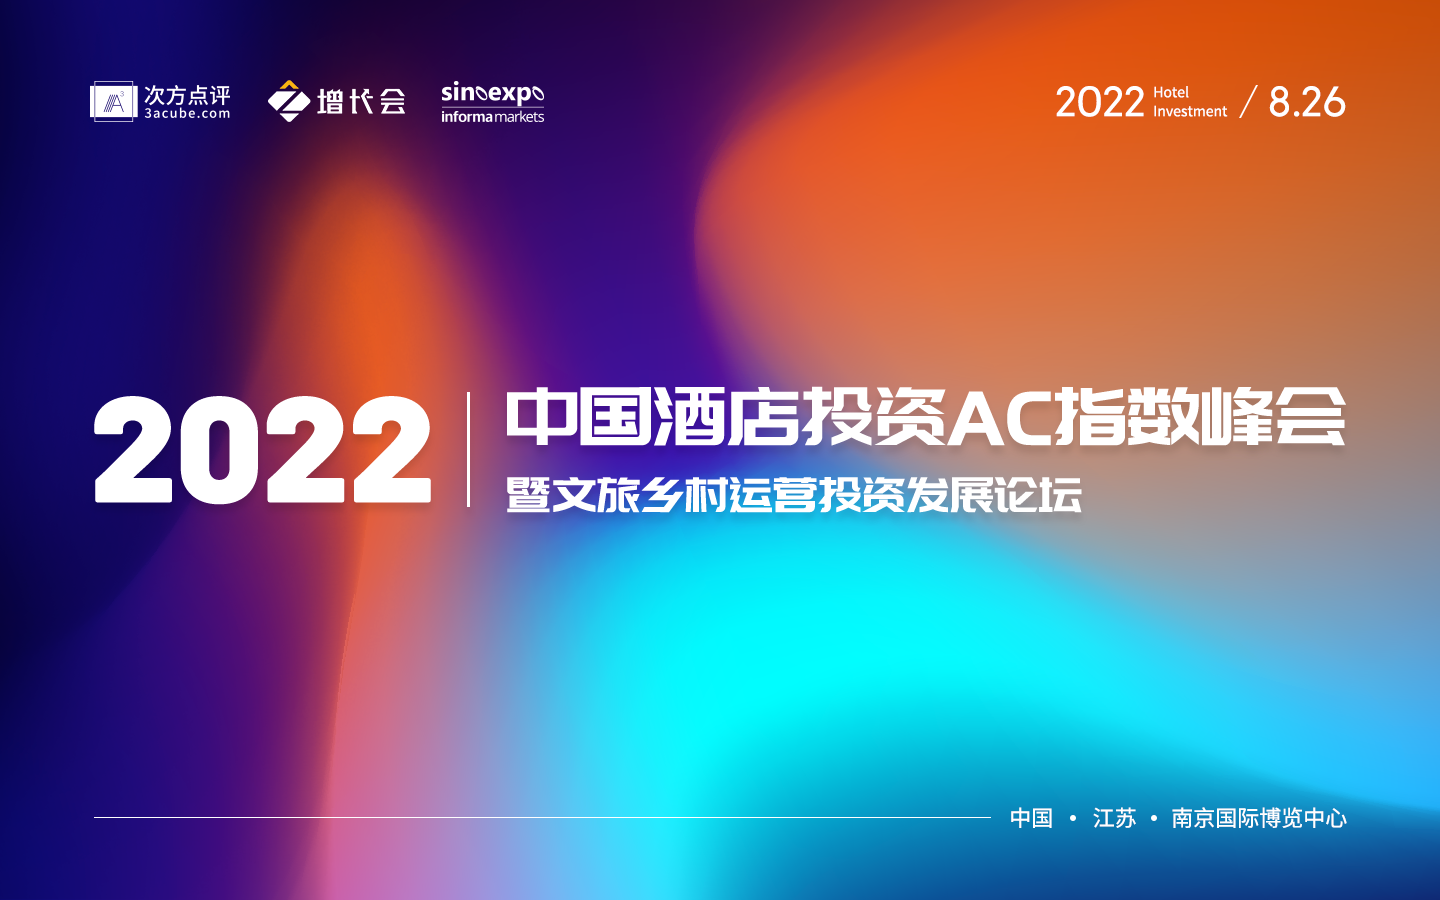 2022中国酒店投资AC指数峰会暨文旅乡村运营投资发展论坛报名表